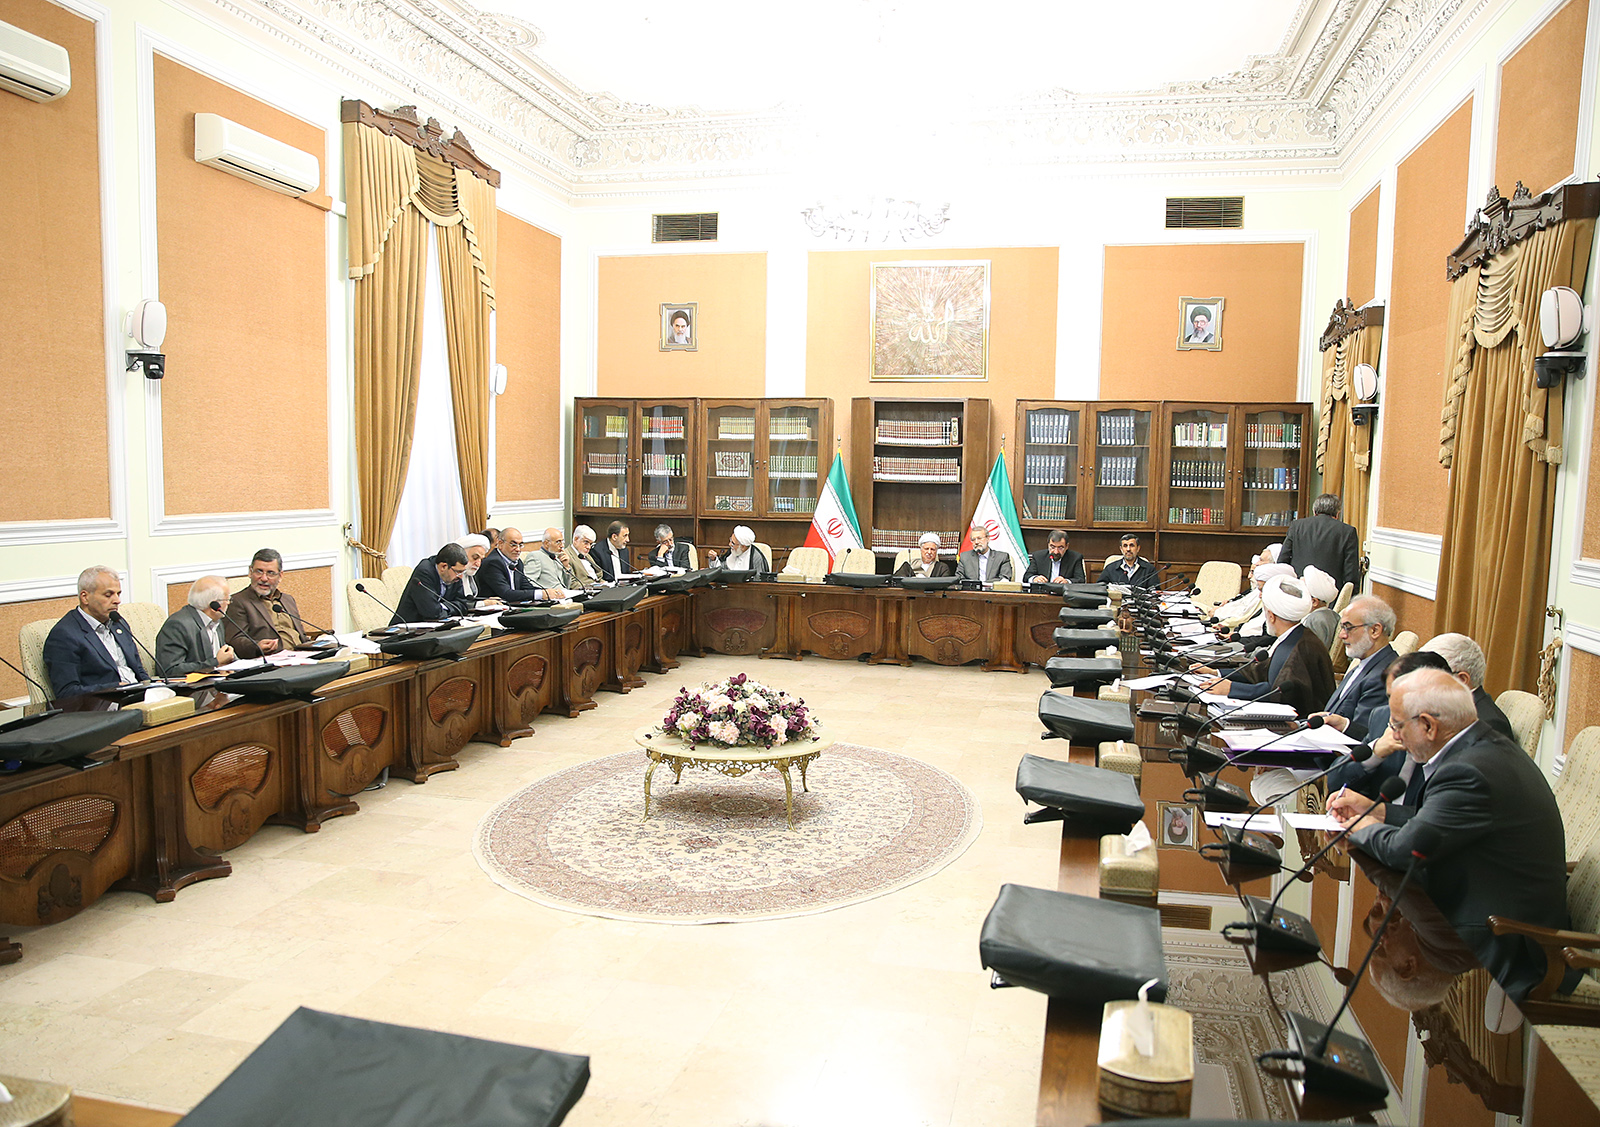 تشکیل جلسه مجمع تشخیص مصلحت نظام